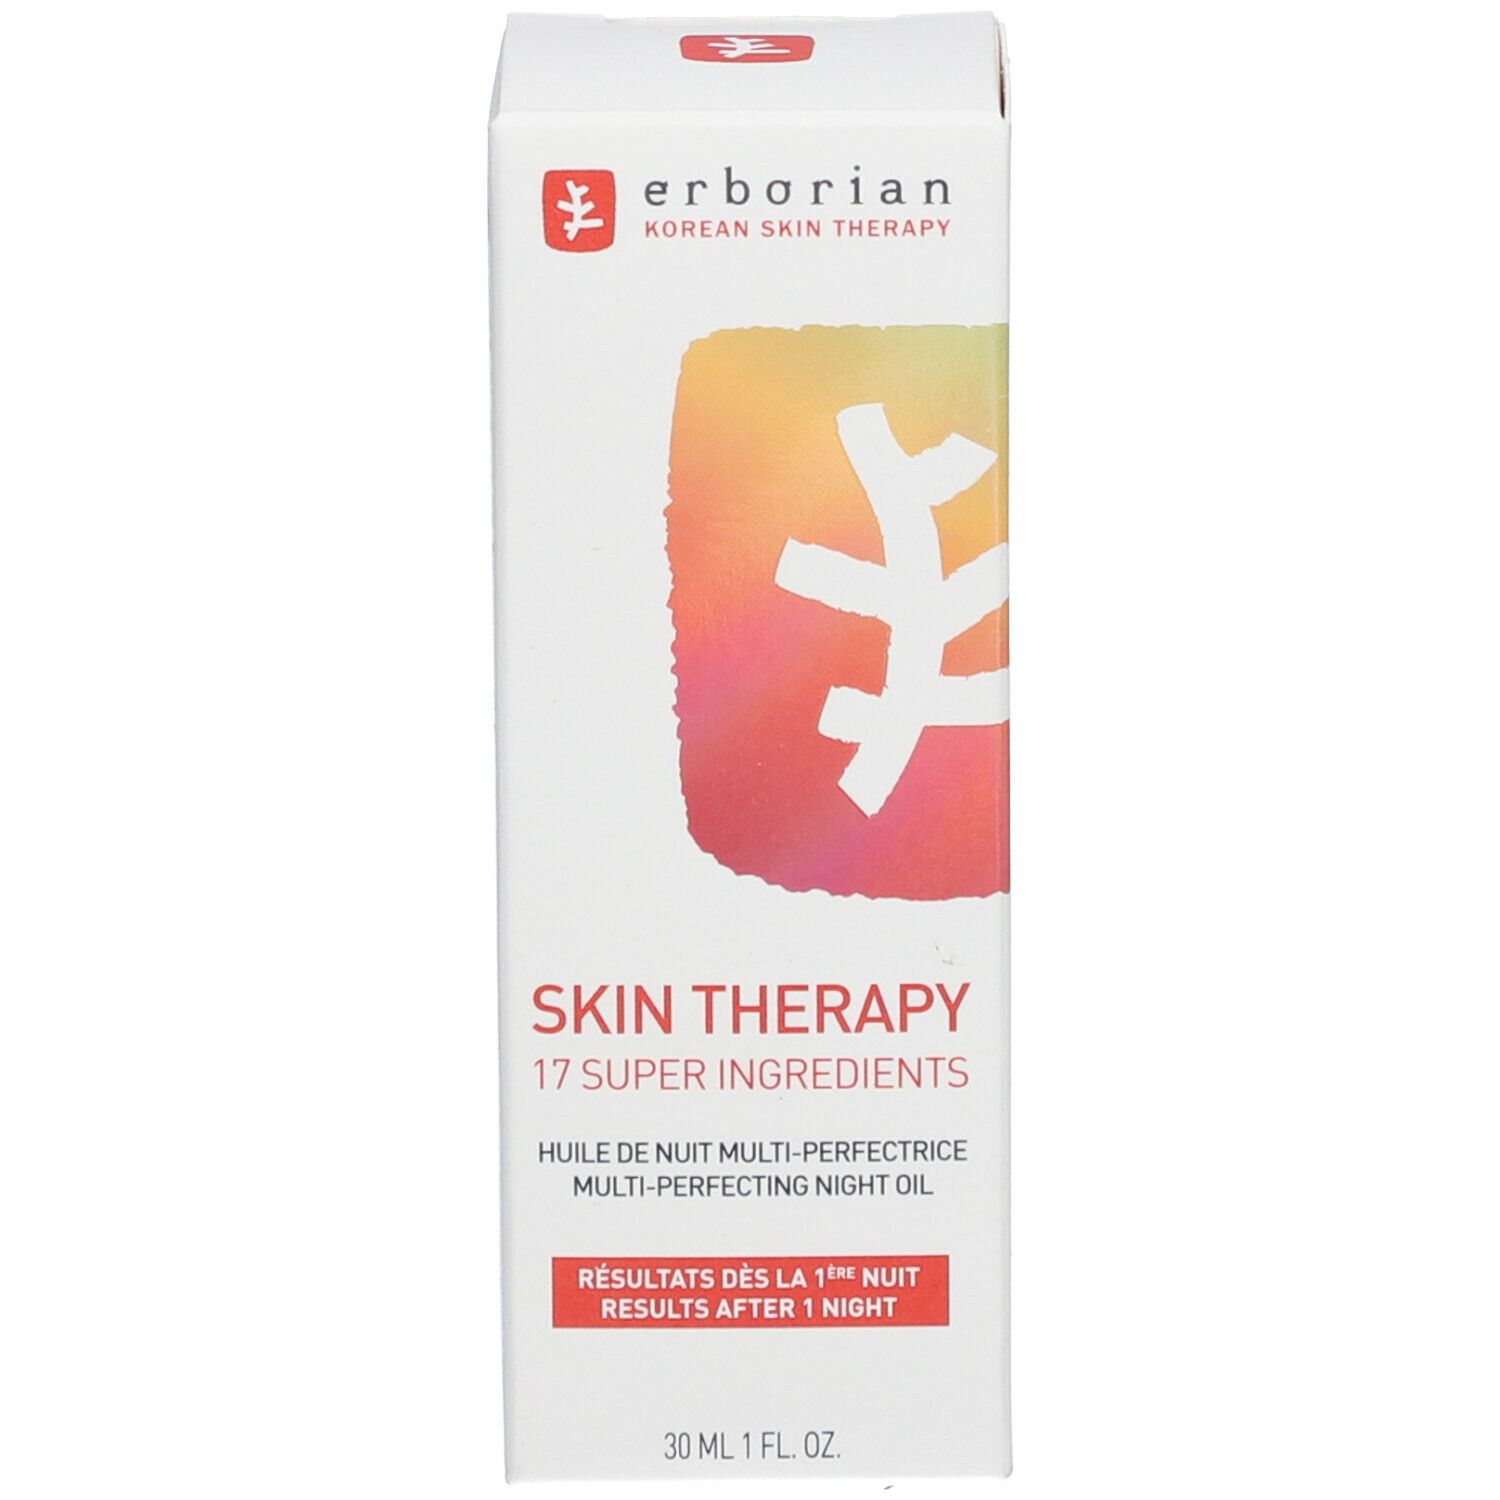 erborian Skin Therapy - Huile de Nuit Multi-Perfectrice